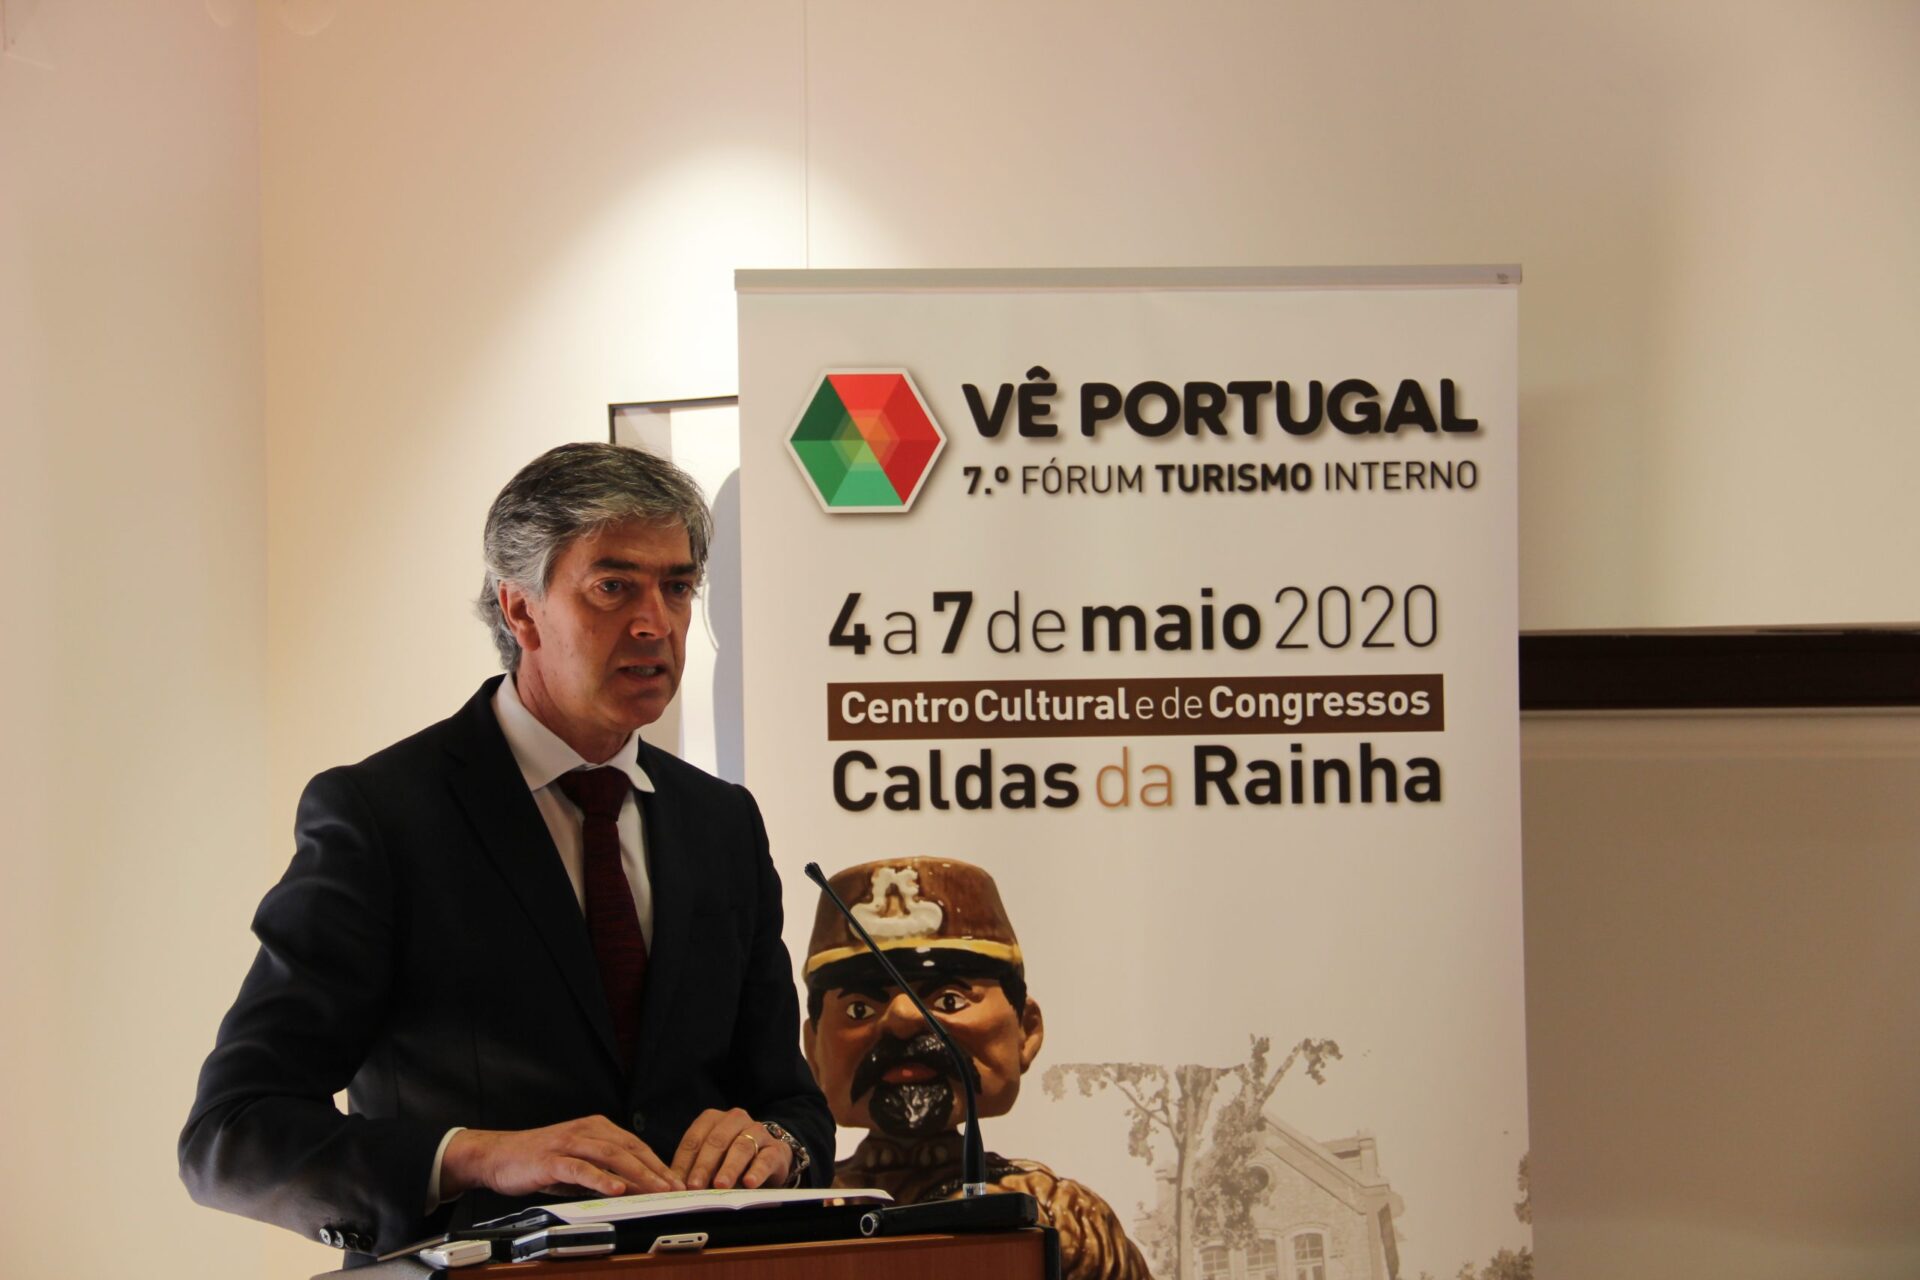 VII Fórum Vê Portugal: Caldas da Rainha vai ser o palco do maior debate nacional sobre turismo interno